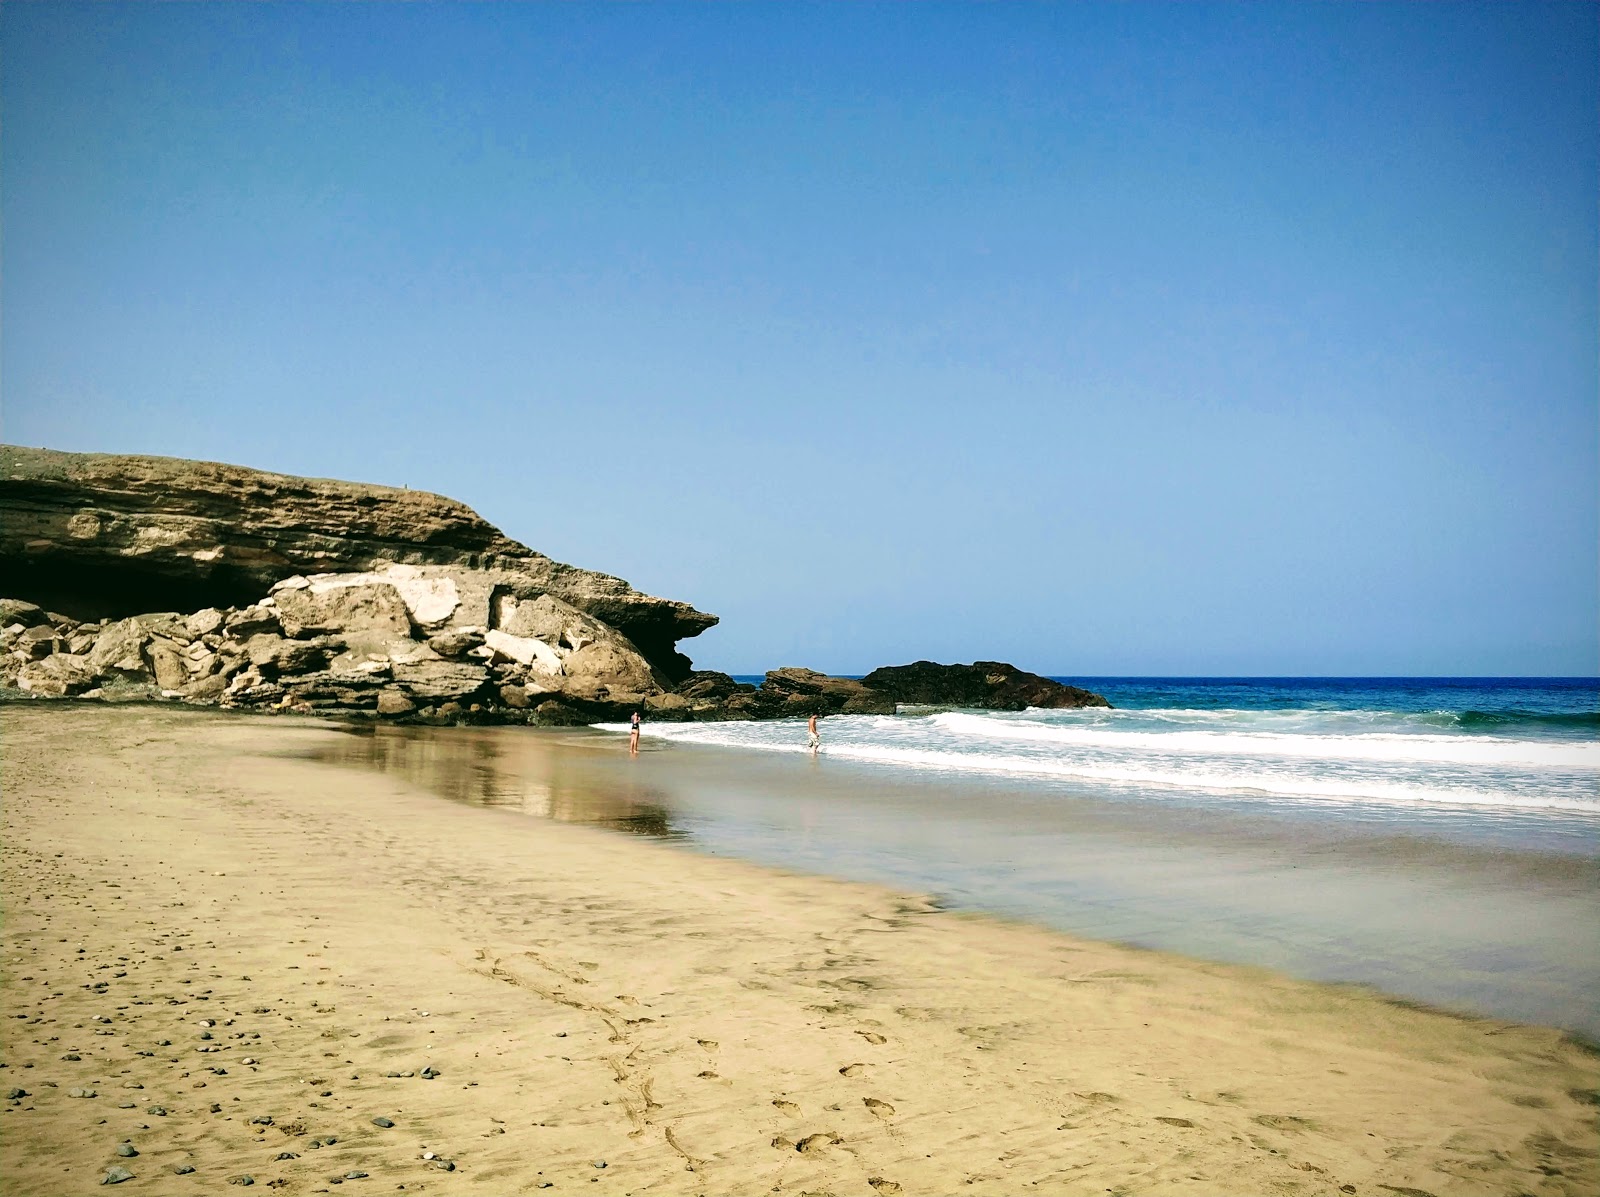 Fotografija Playa de Vigocho nahaja se v naravnem okolju